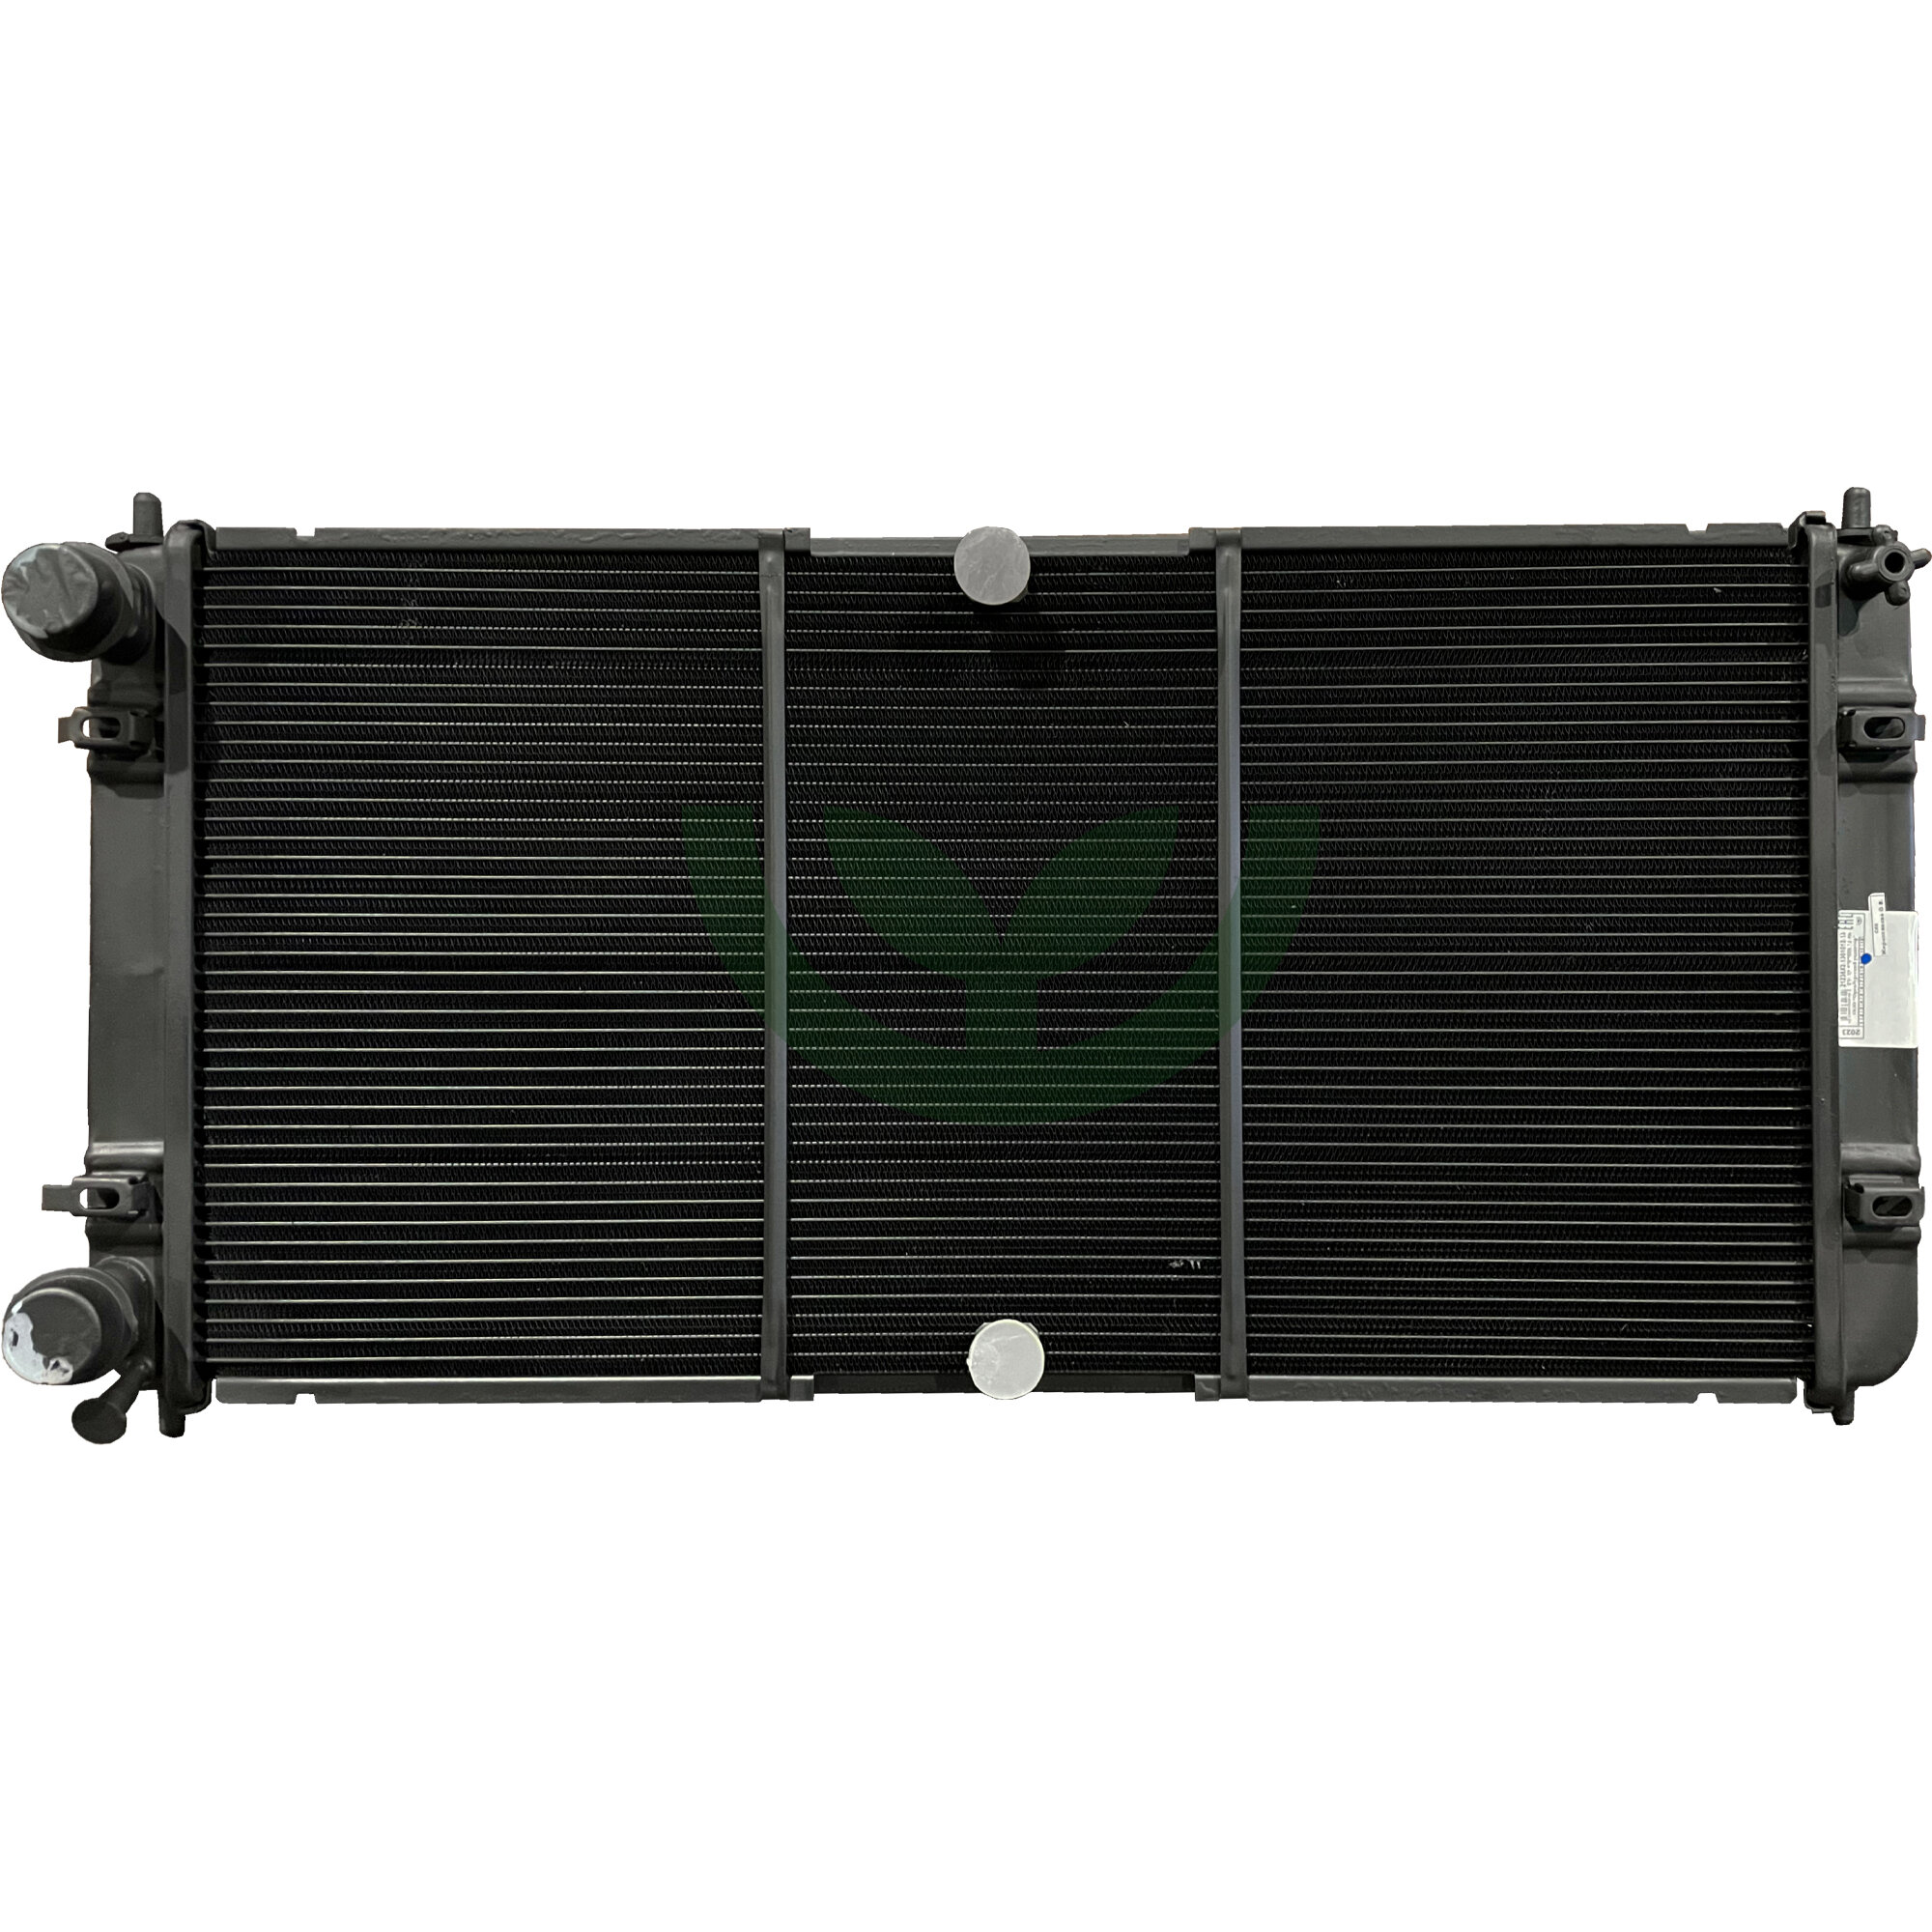 Радиатор охлаждения для ВАЗ 21236 Шевроле-Нива медный 3-х рядный арт. 21236Х2-1301012-10